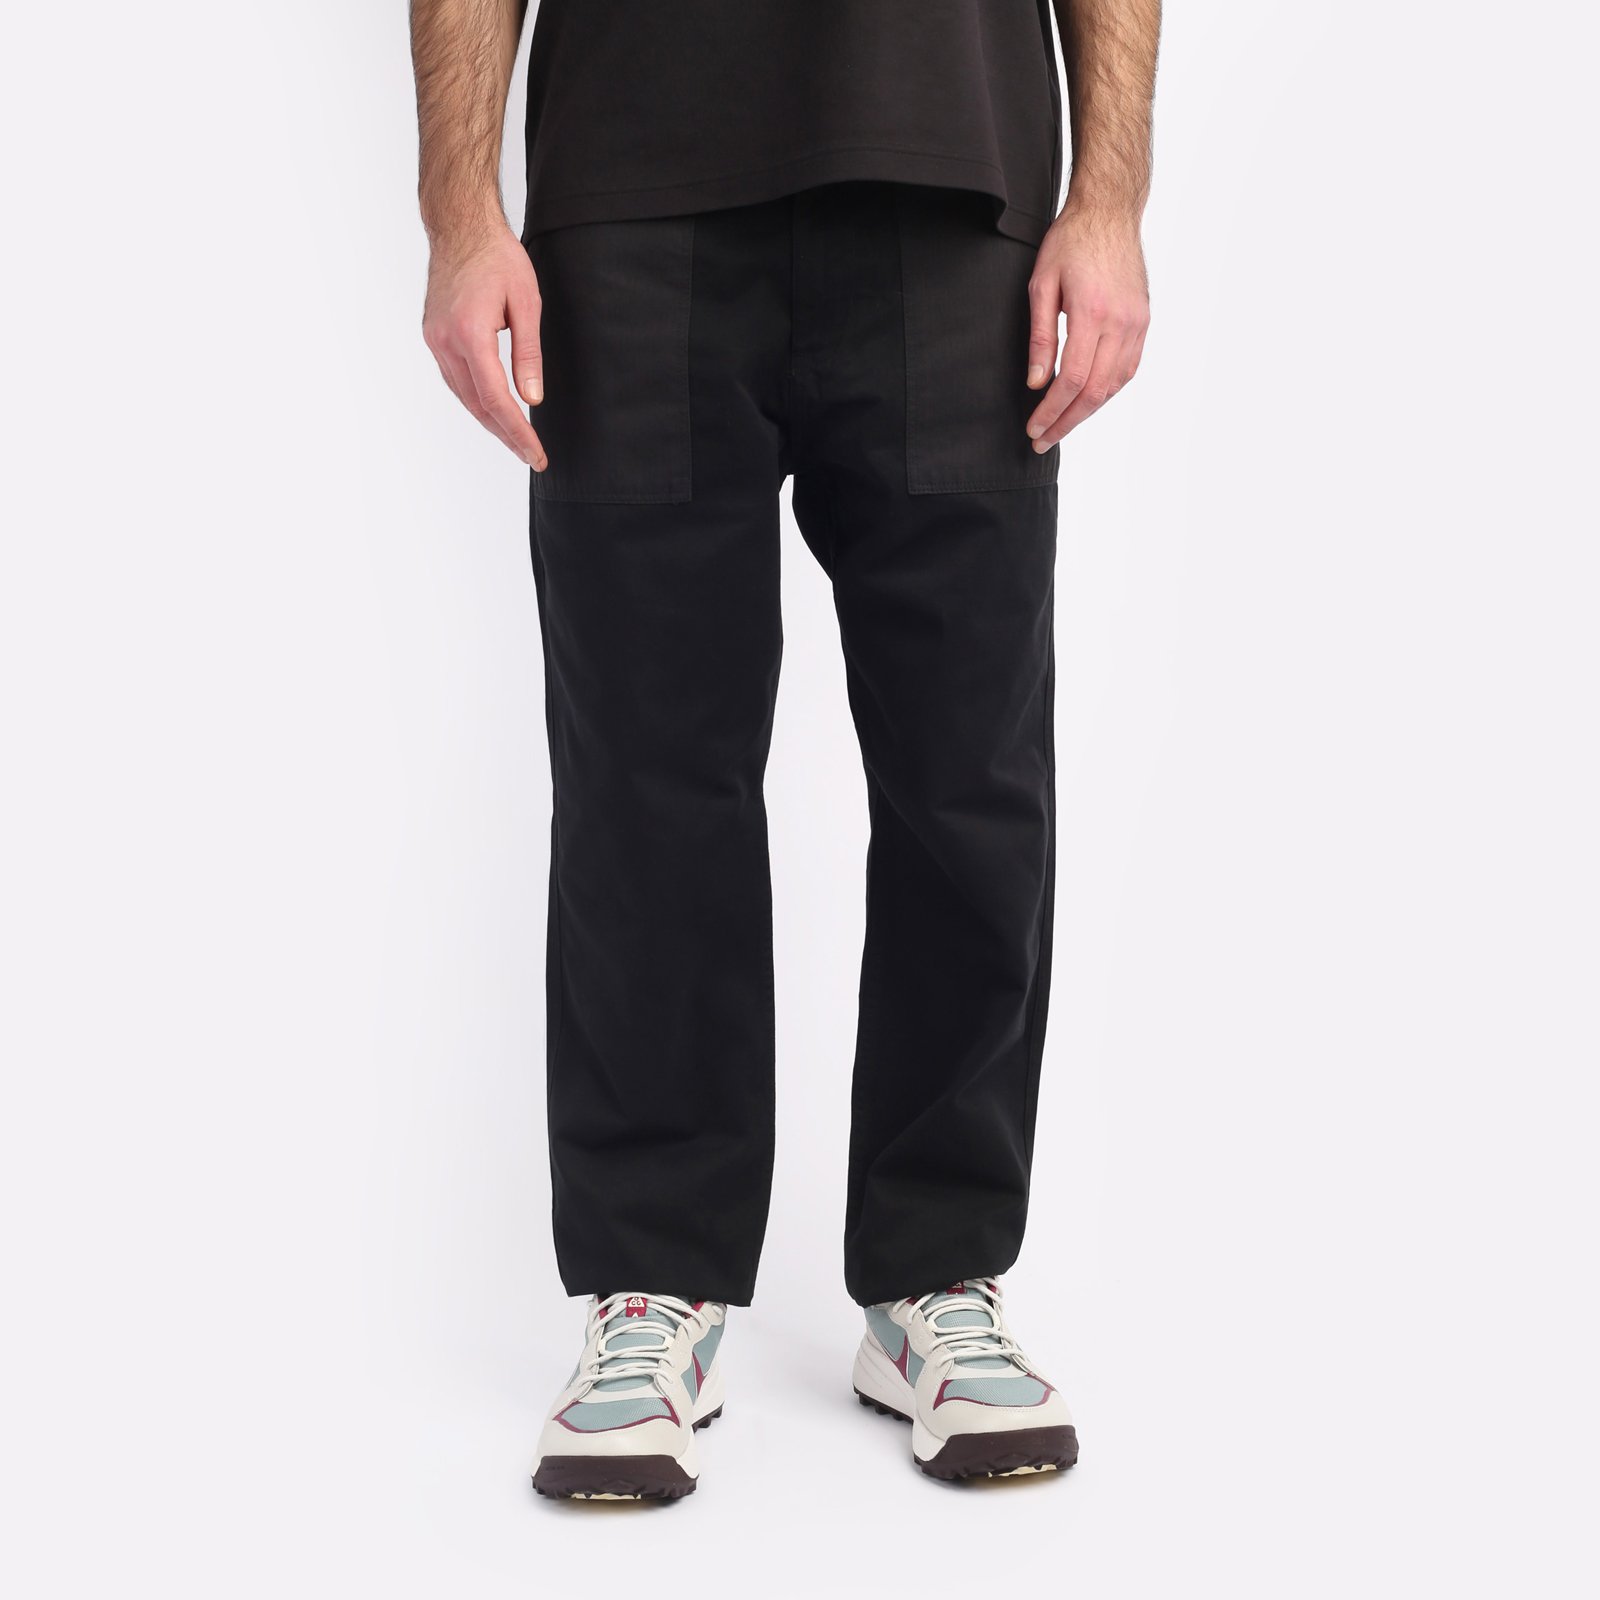 мужские брюки Alpha Industries Fatigue Pant  (MBO52500C1-black)  - цена, описание, фото 1